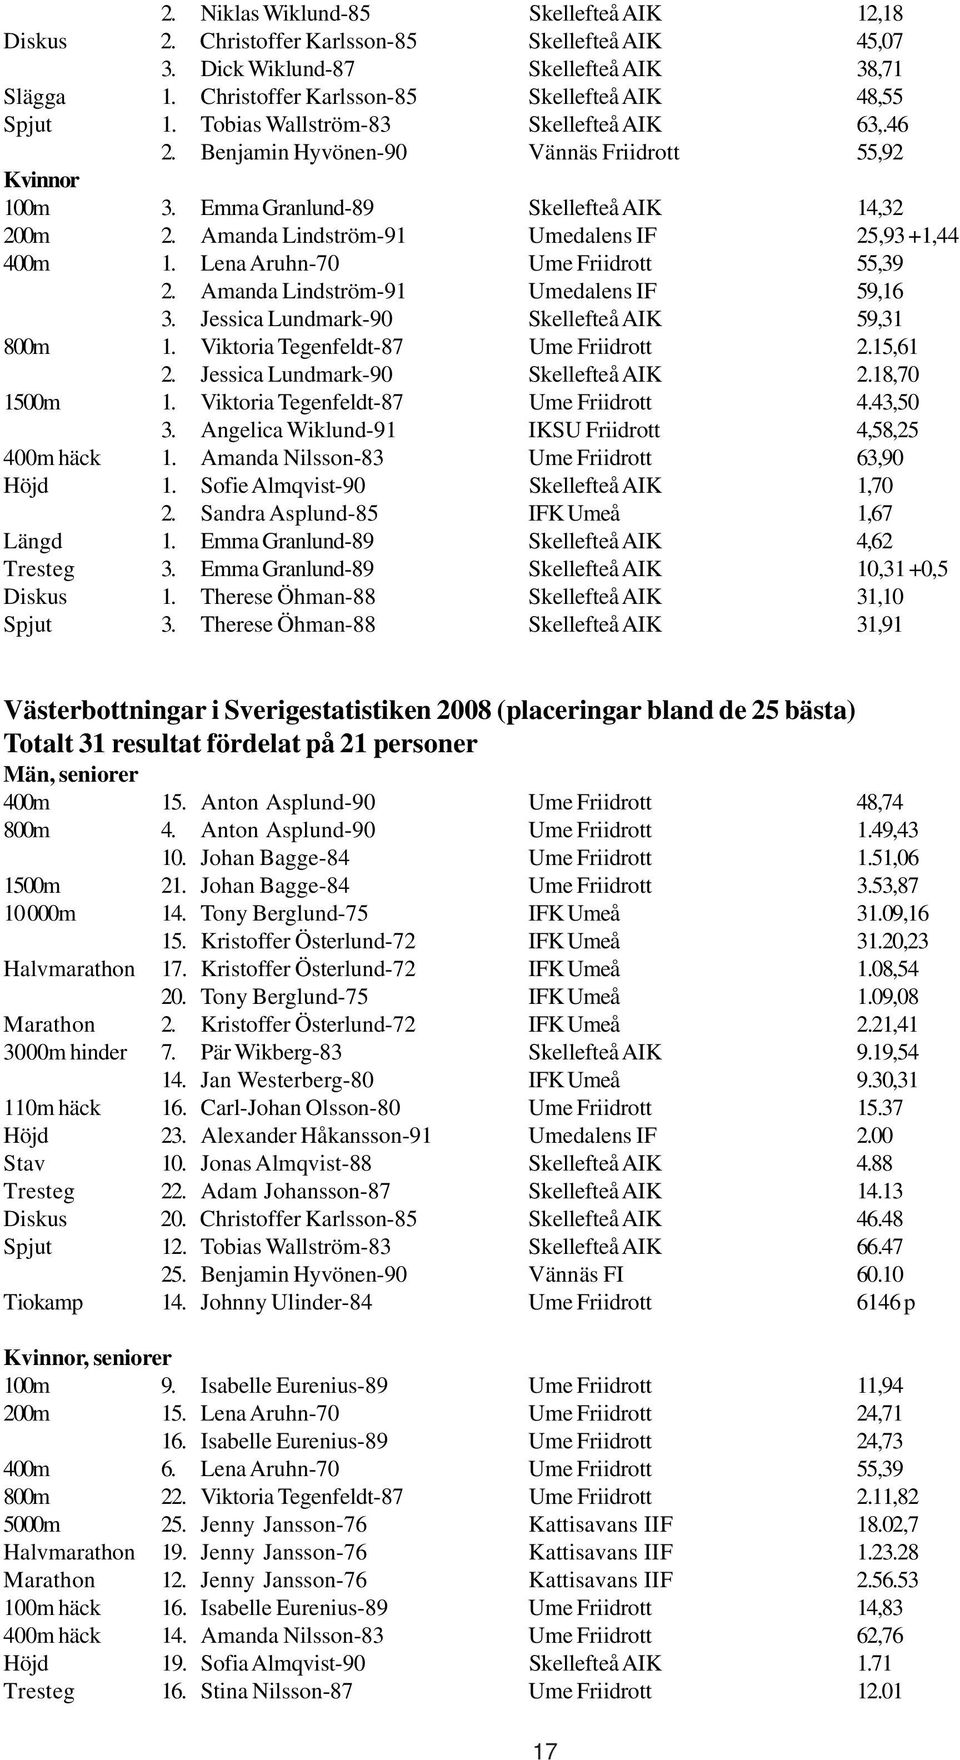 Amanda Lindström-91 Umedalens IF 25,93 +1,44 400m 1. Lena Aruhn-70 Ume Friidrott 55,39 2. Amanda Lindström-91 Umedalens IF 59,16 3. Jessica Lundmark-90 Skellefteå AIK 59,31 800m 1.